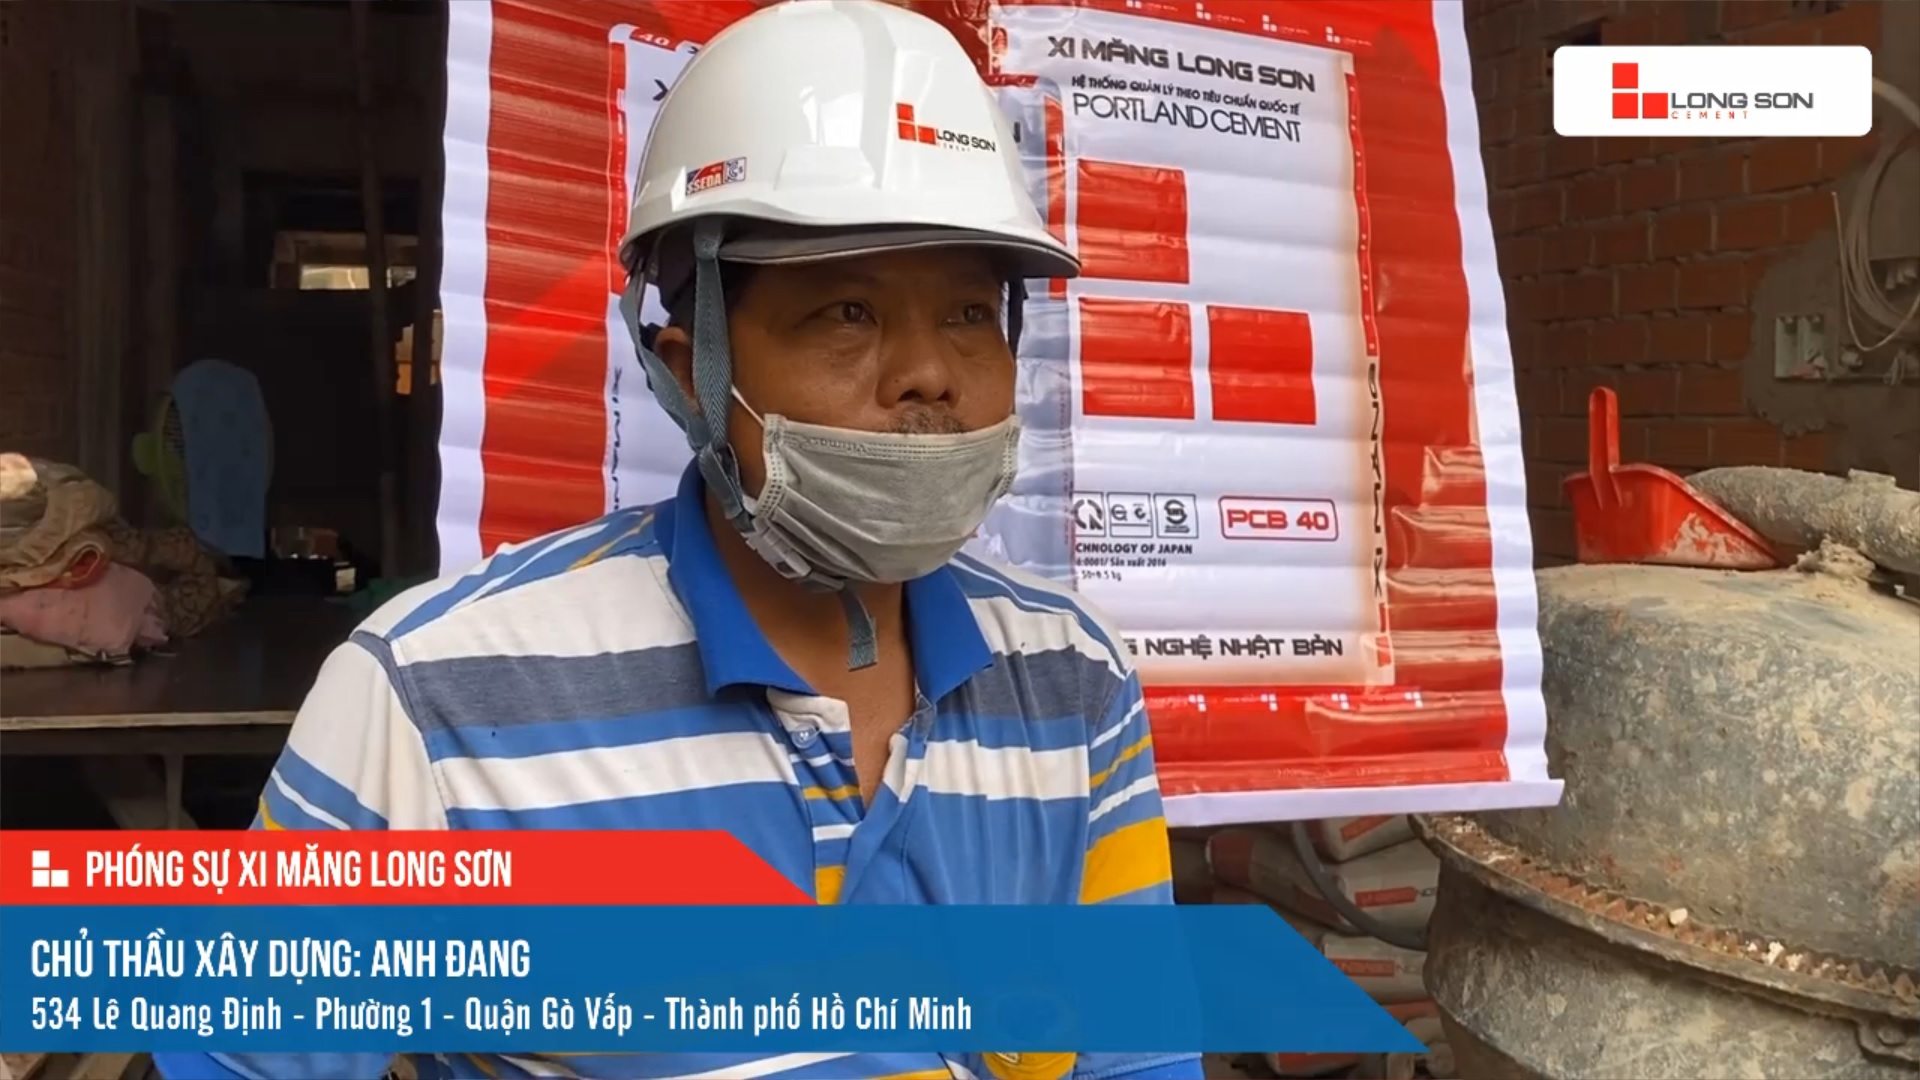 Phóng sự công trình sử dụng xi măng Long Sơn tại thành phố Hồ Chí Minh ngày 09/10/2021